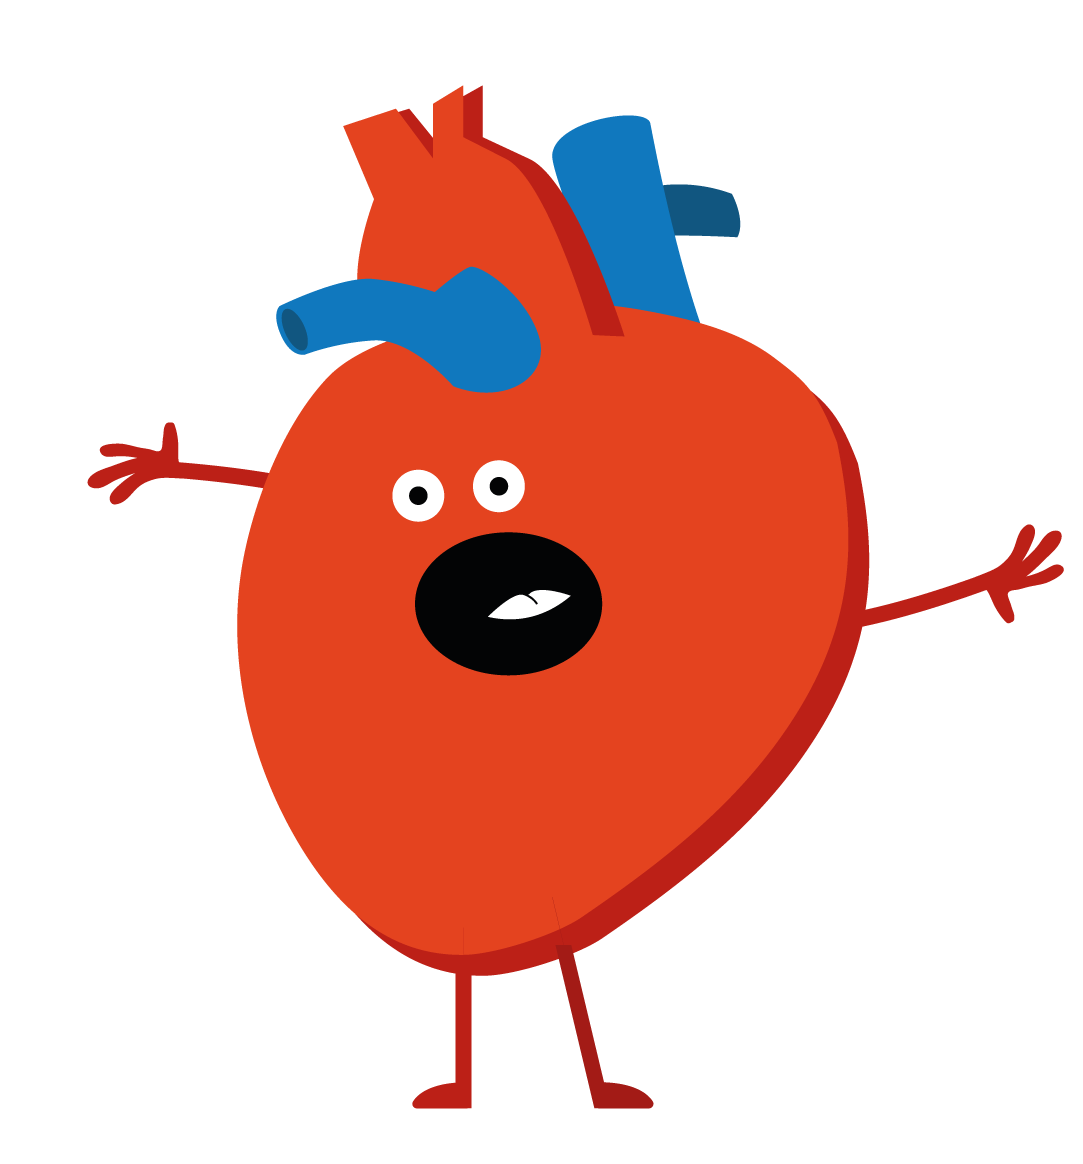 Hjärt-kärlsystemets huvuduppgift är att föra ut näringsämnen och syre till kroppens alla vävnader och organ.